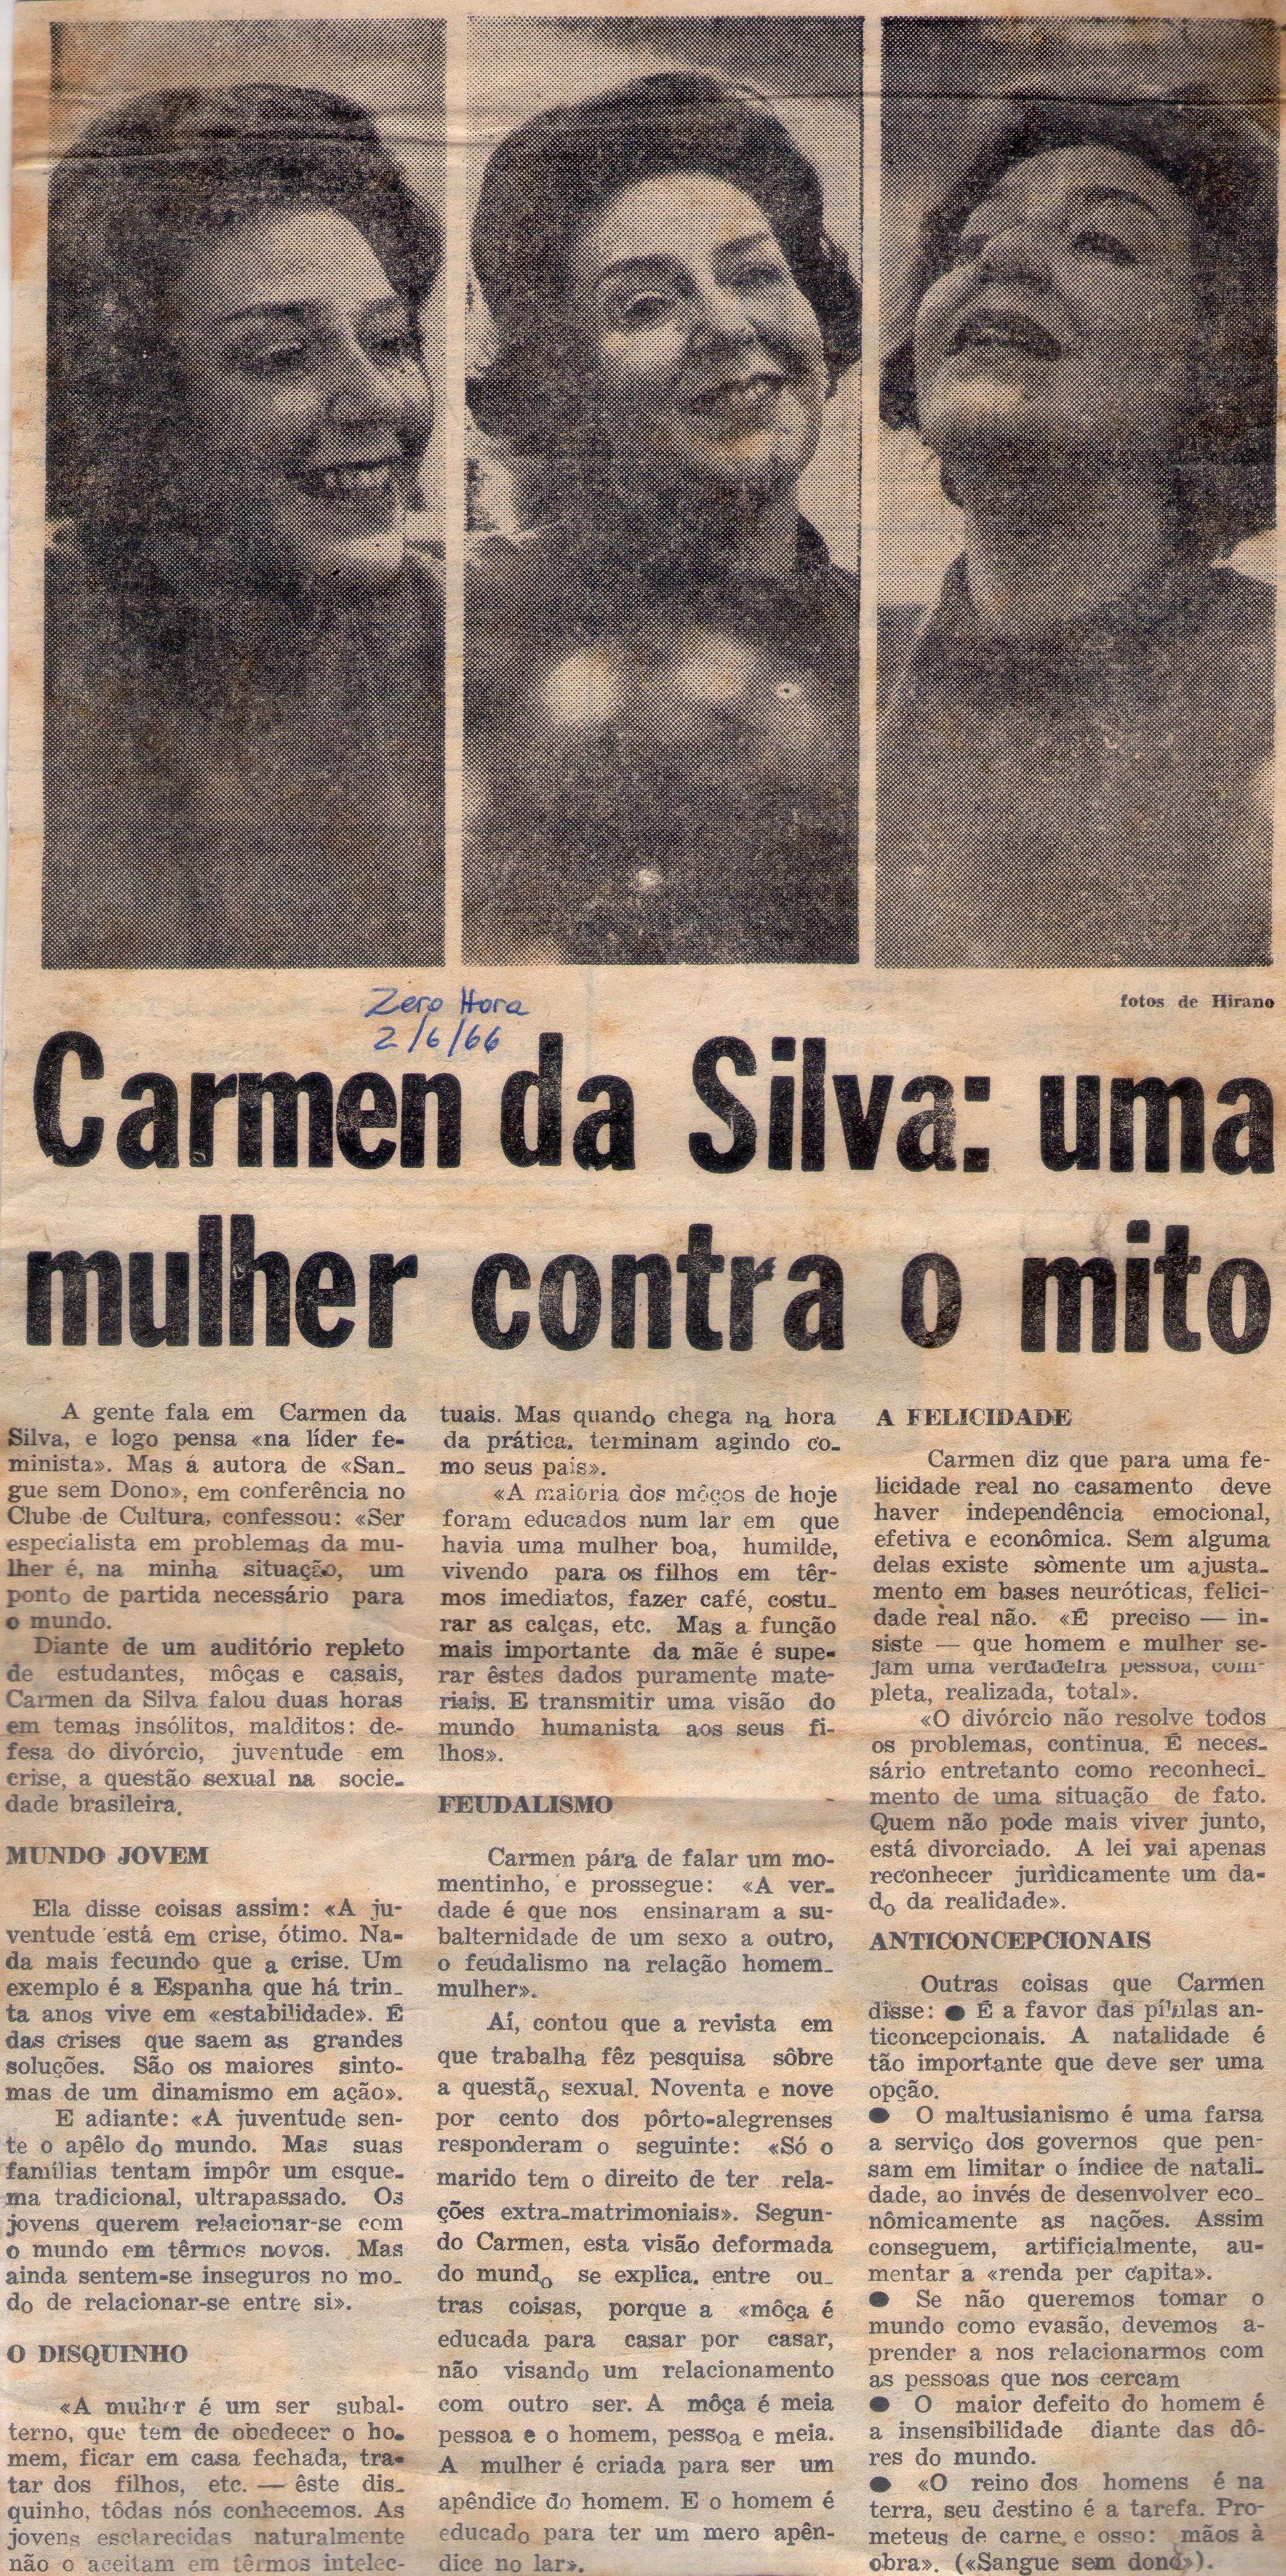 02 de Junho de 1966 - Zero Hora. Carmen da Silva: uma mulher contra o mito.